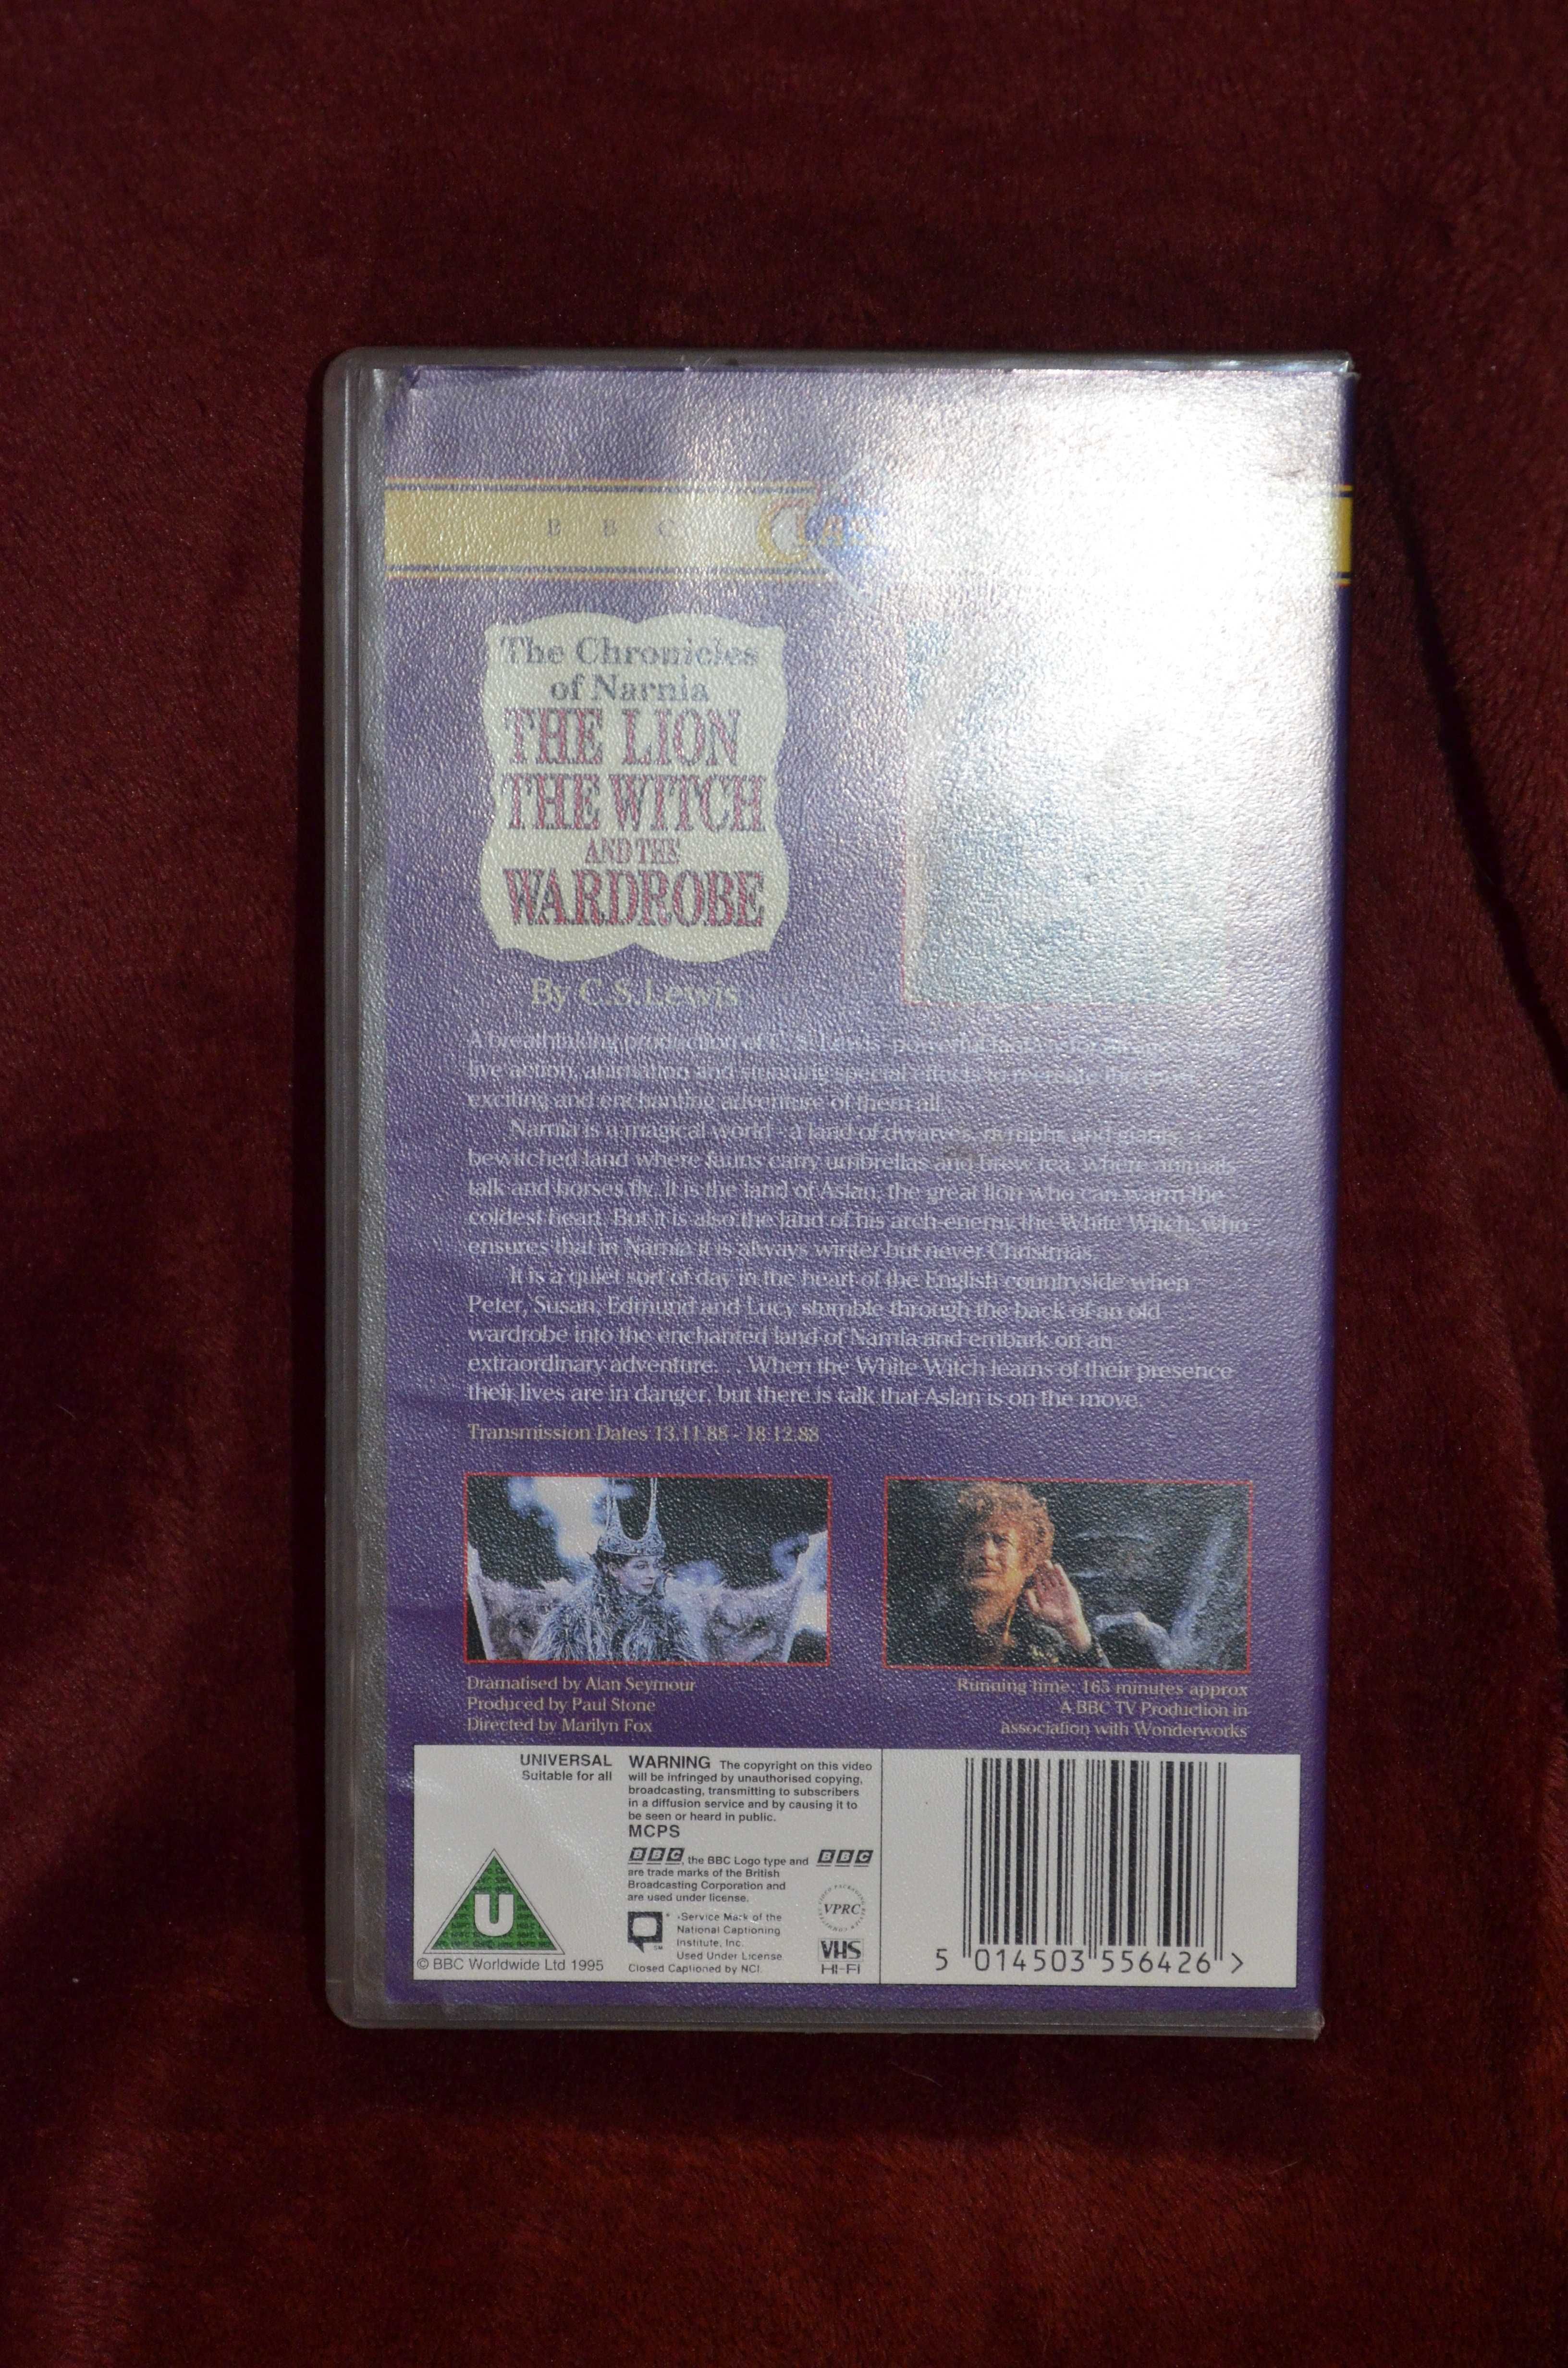 Opowieści z Narnii, VHS, 1988 po angielsku